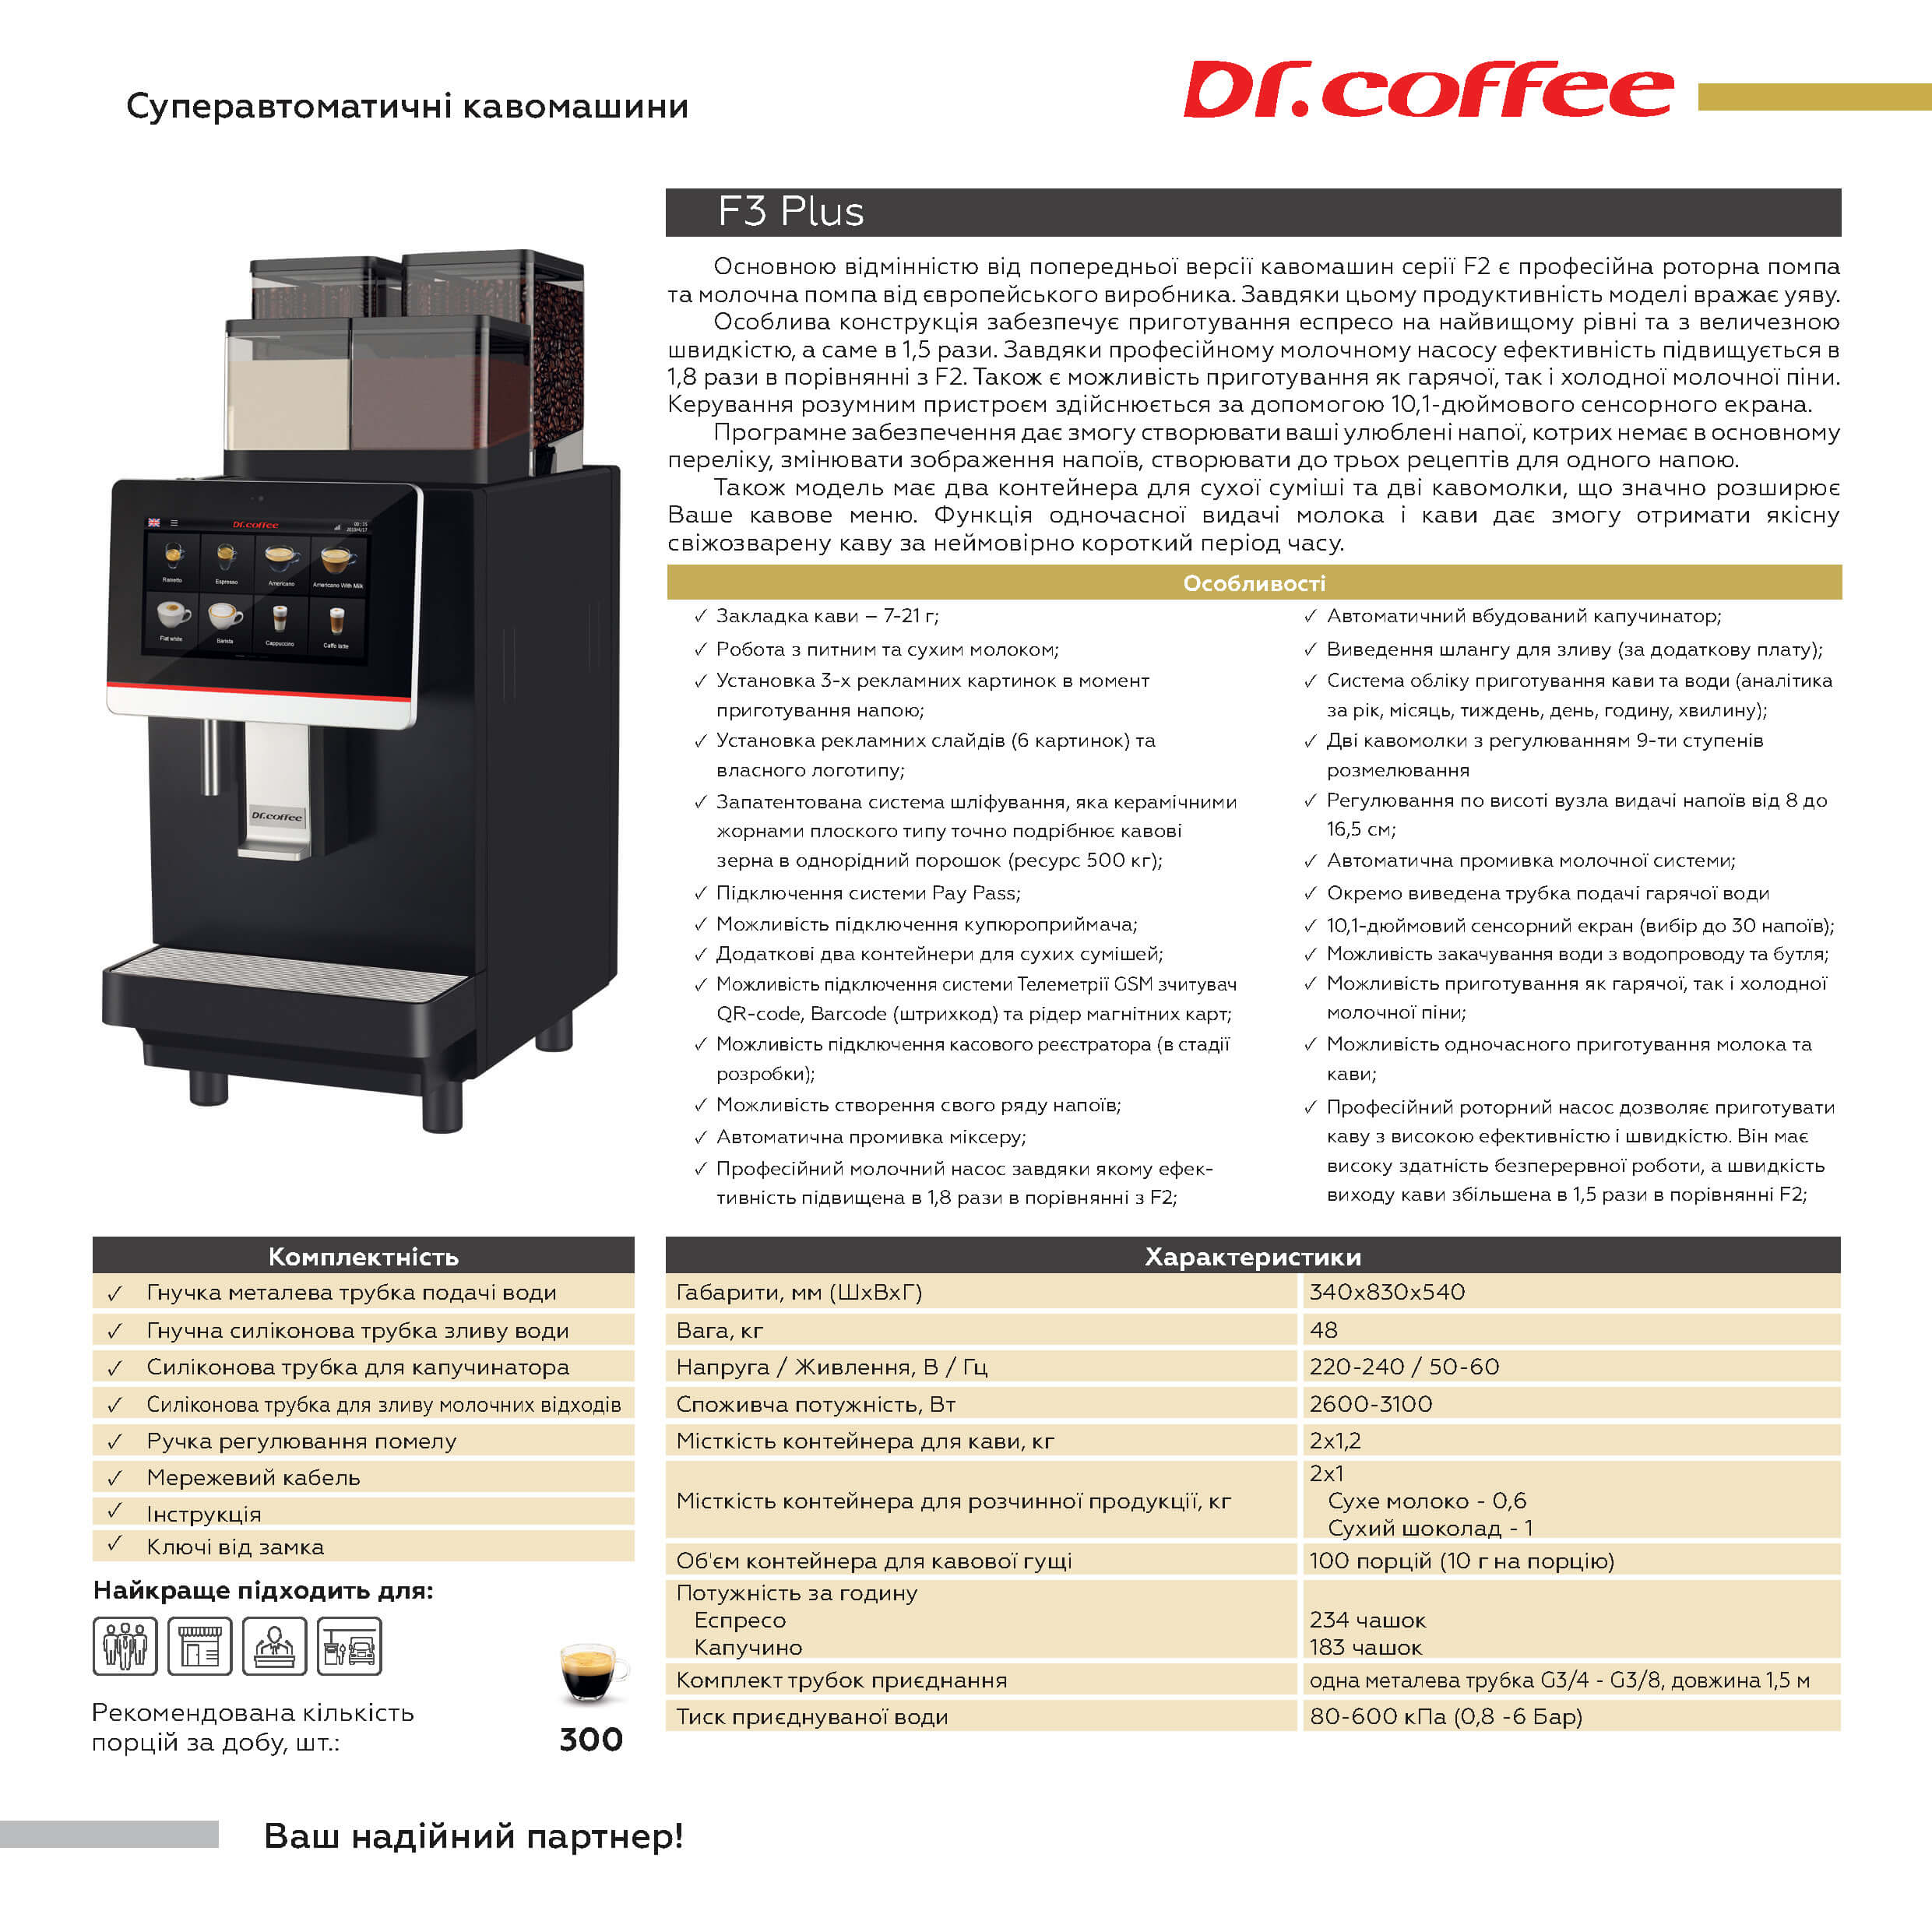 оборудование Dr.Coffee нафторинок Страница 3 1